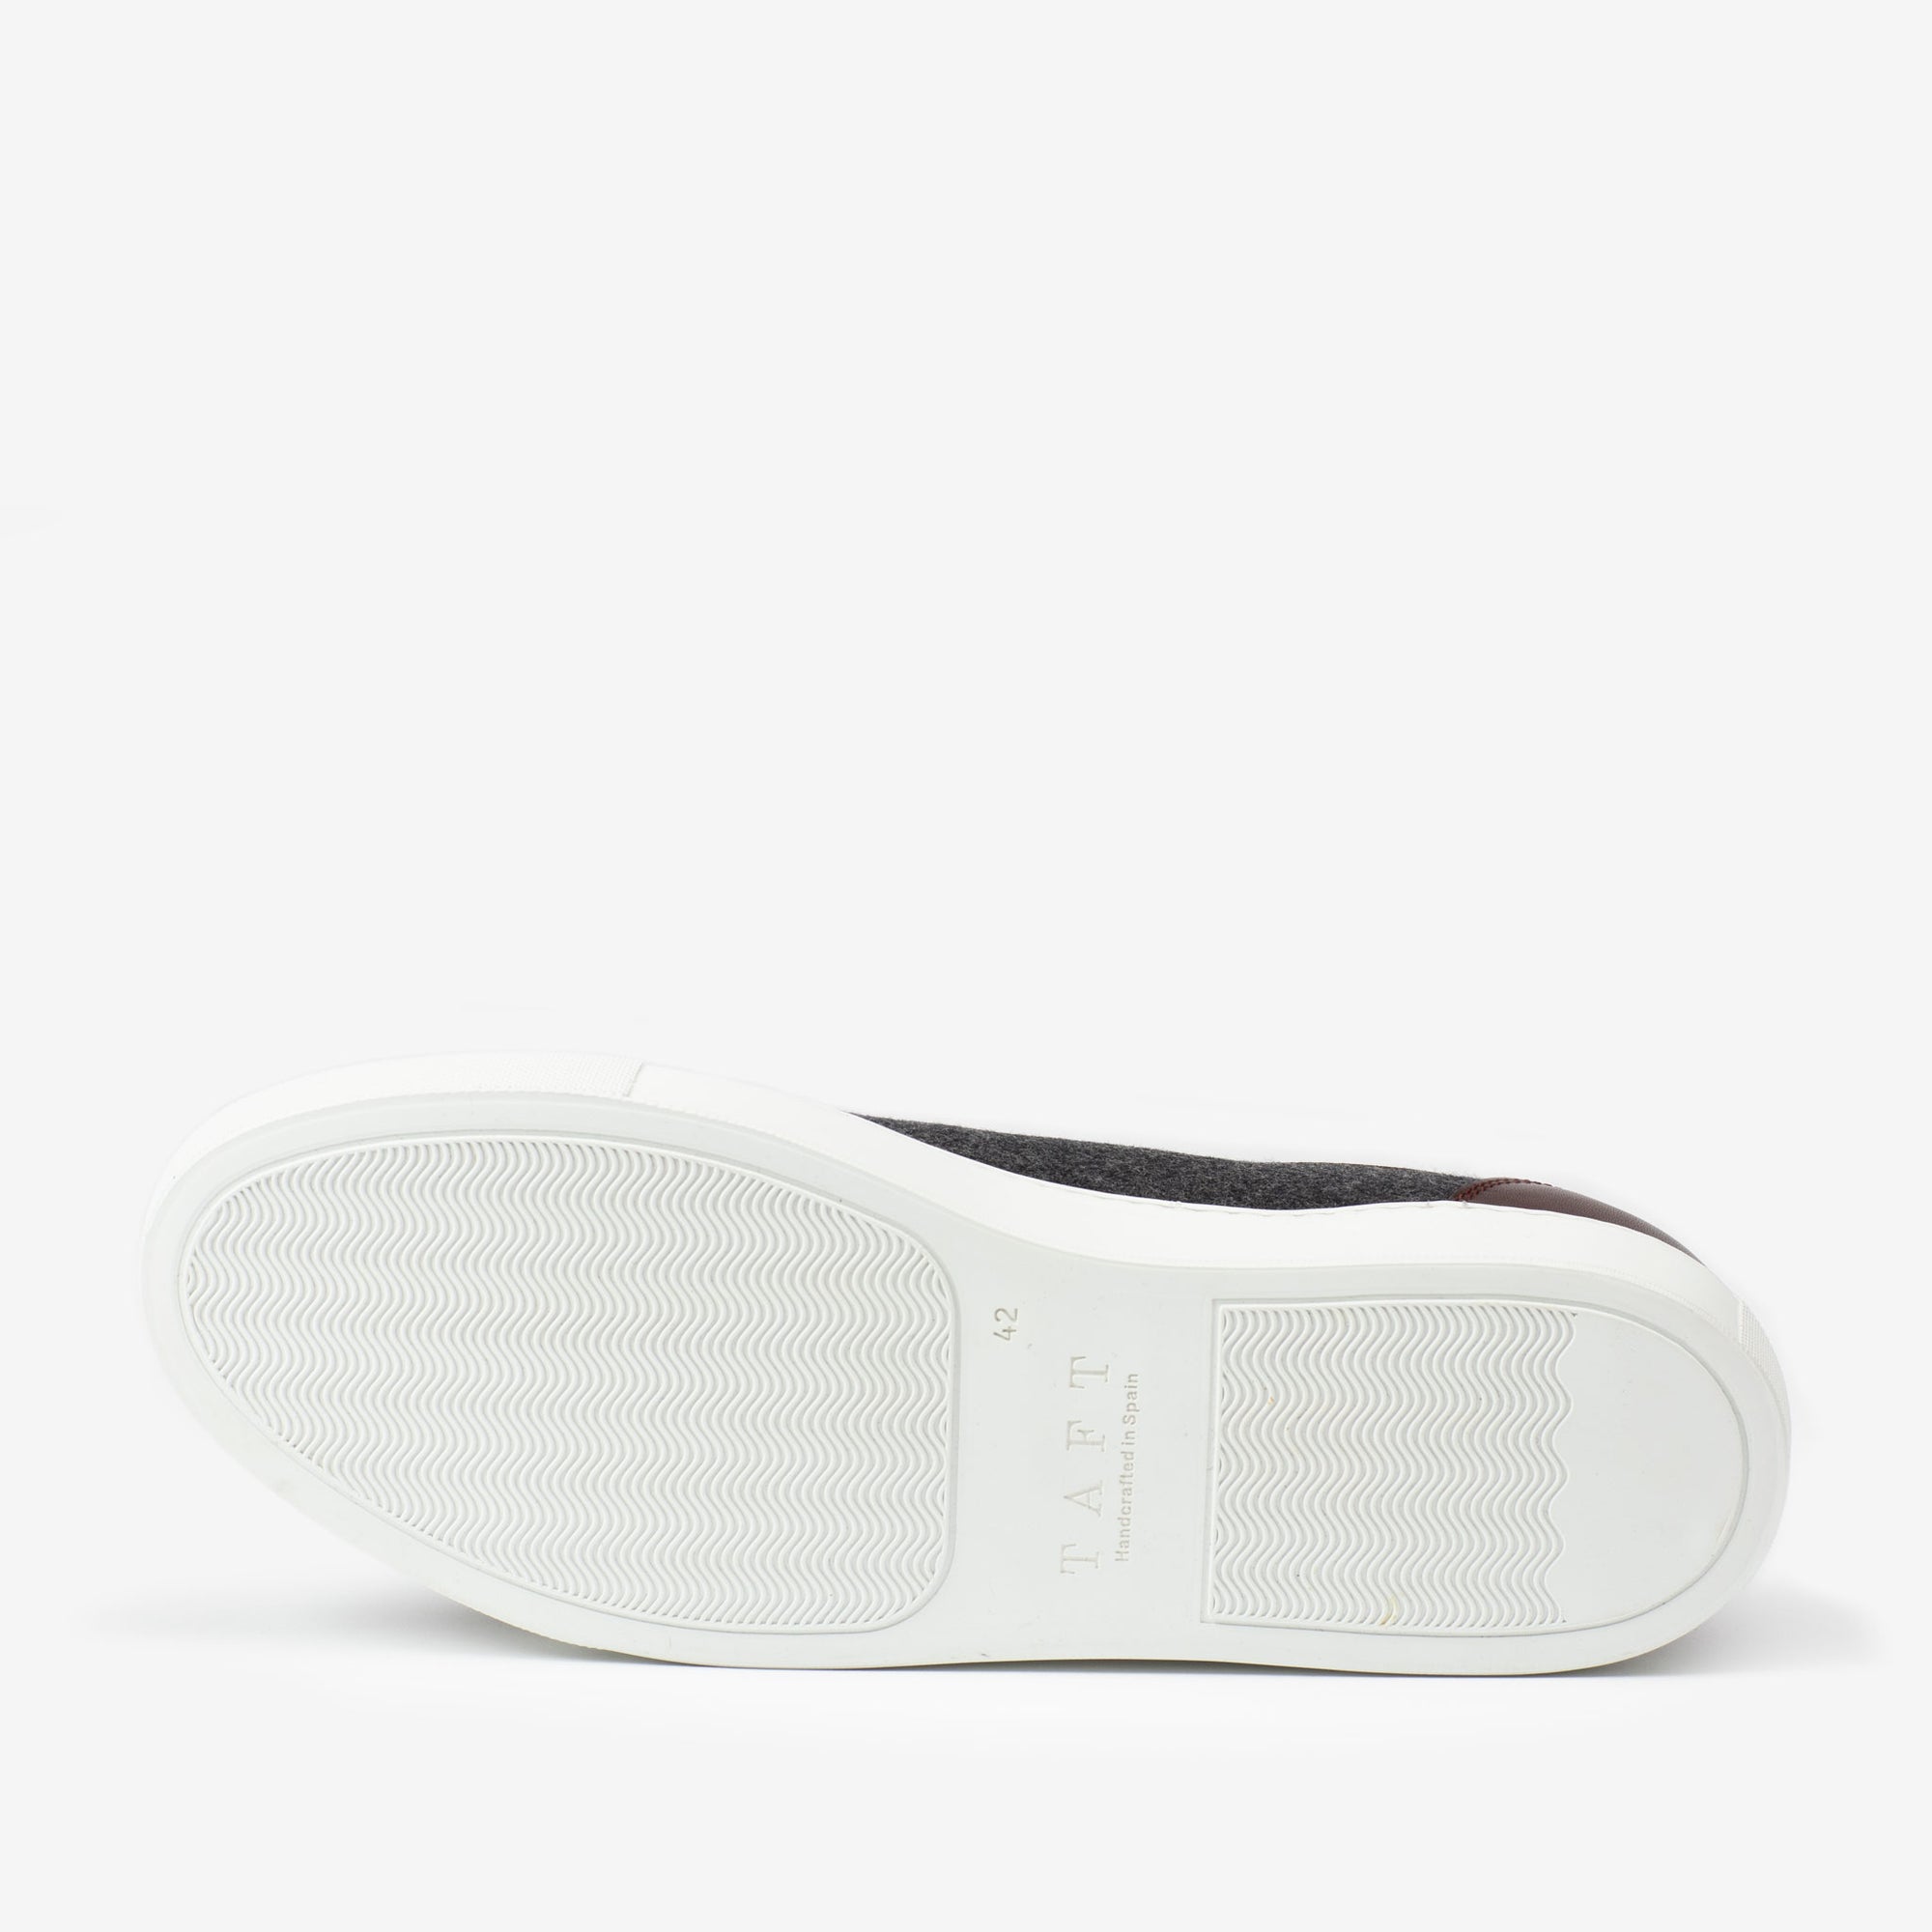 Sole of Jack Sneaker in Grey Oxblood